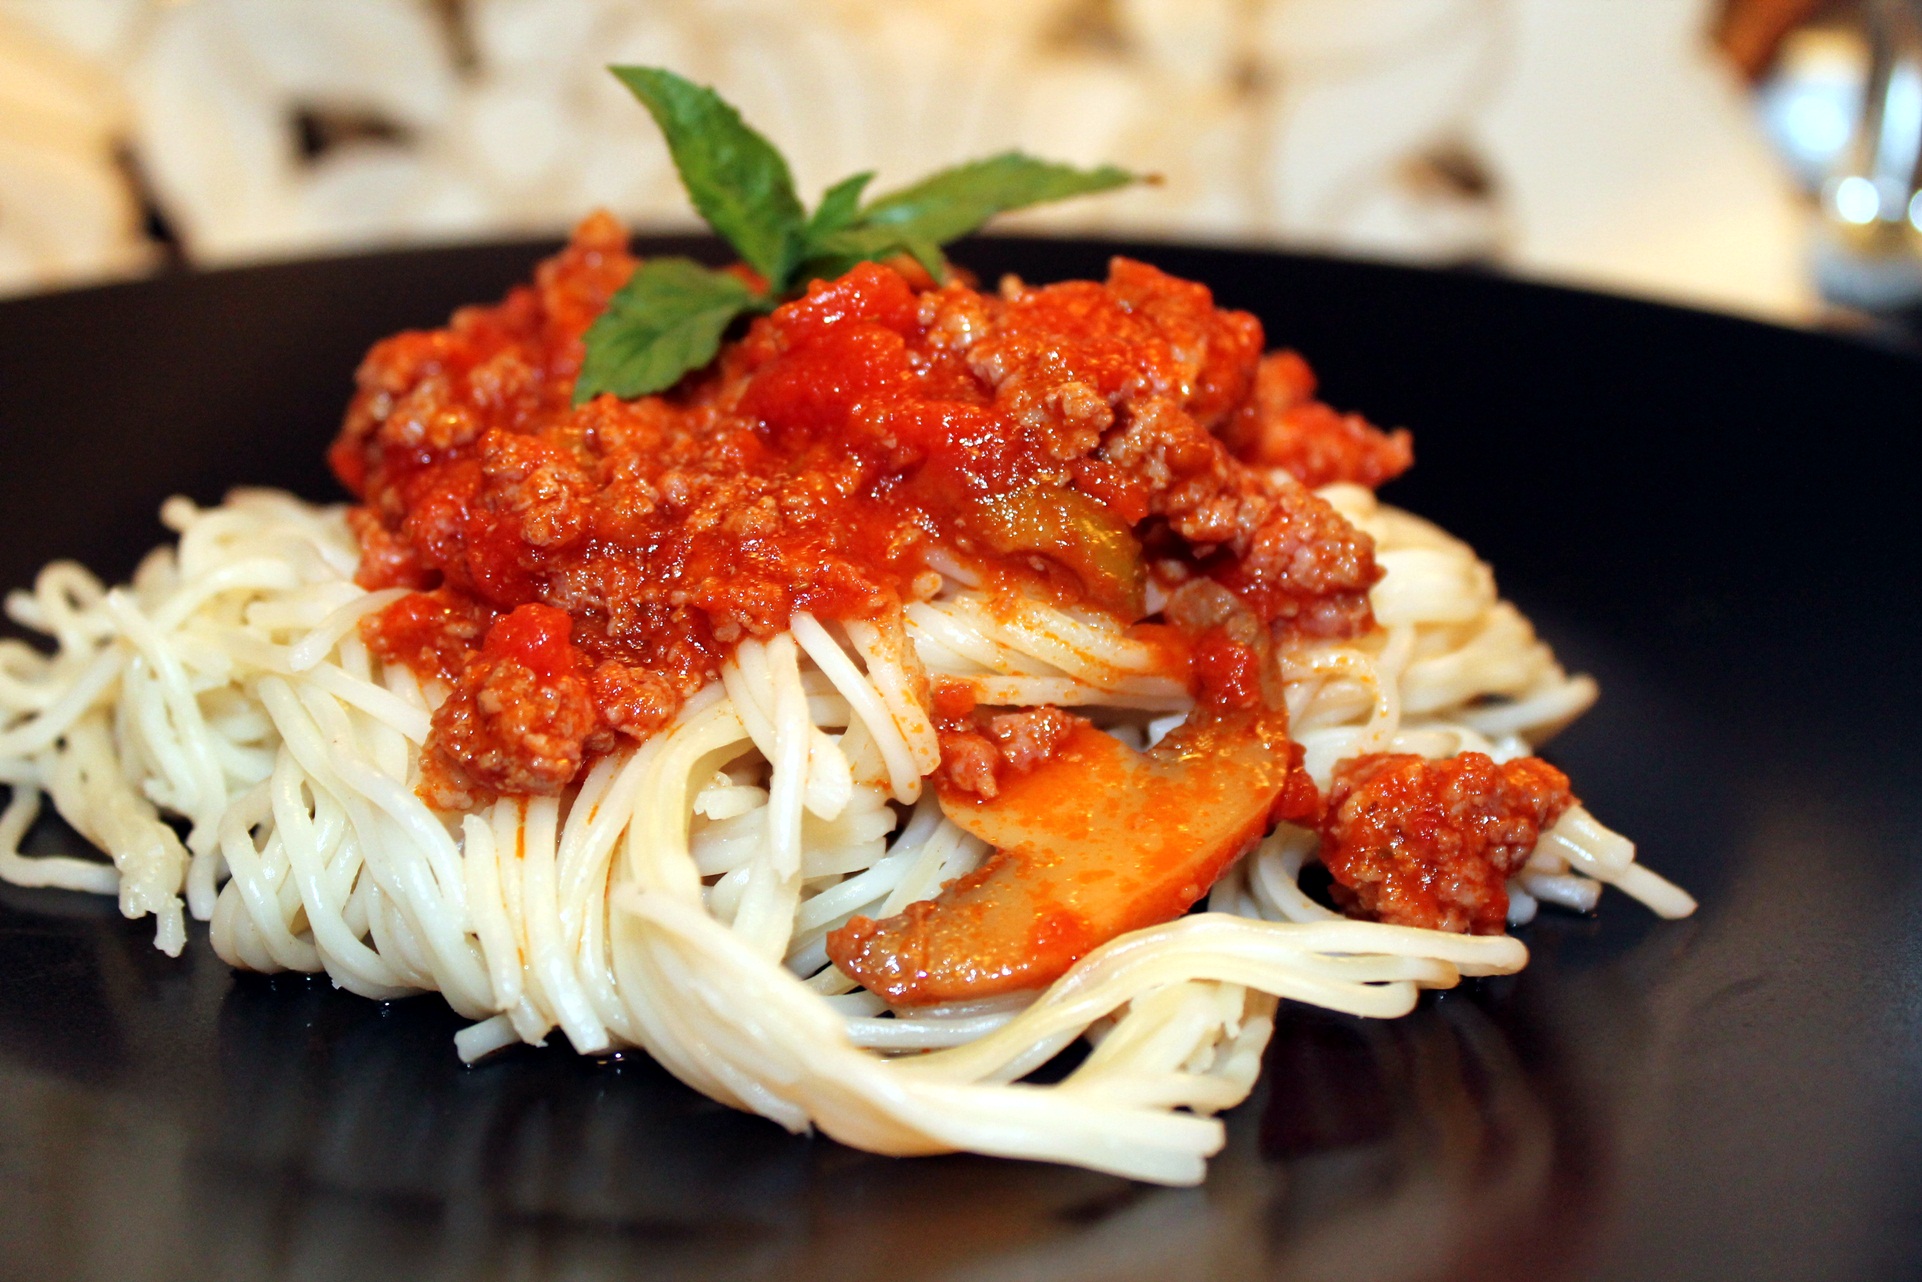 Spaghete cu sos roșu, ciuperci, capere și măsline verzi